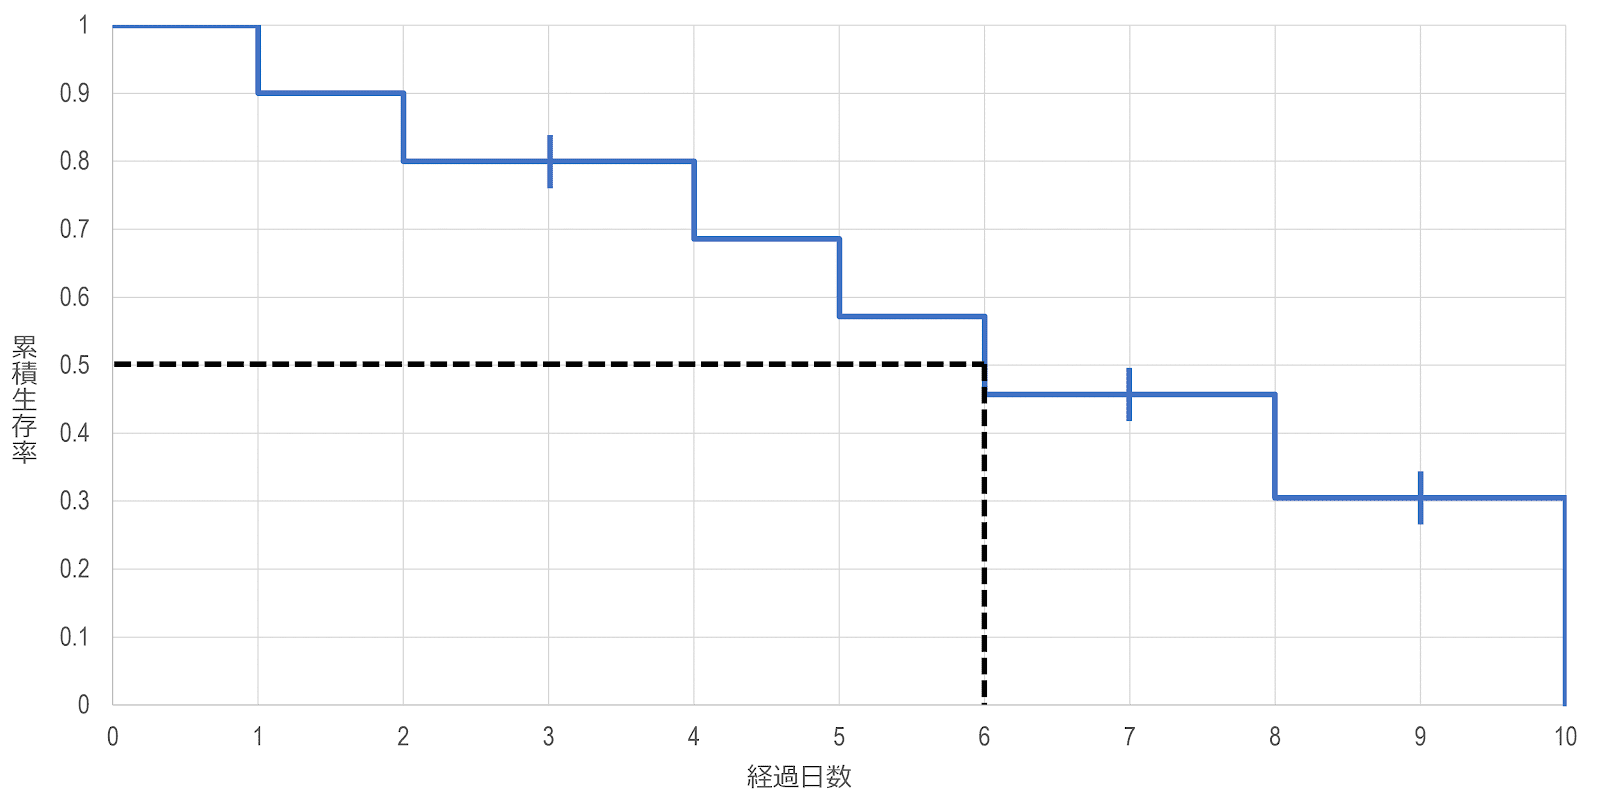 カプラン・マイヤー法による生存時間中央値の推定のイメージ図